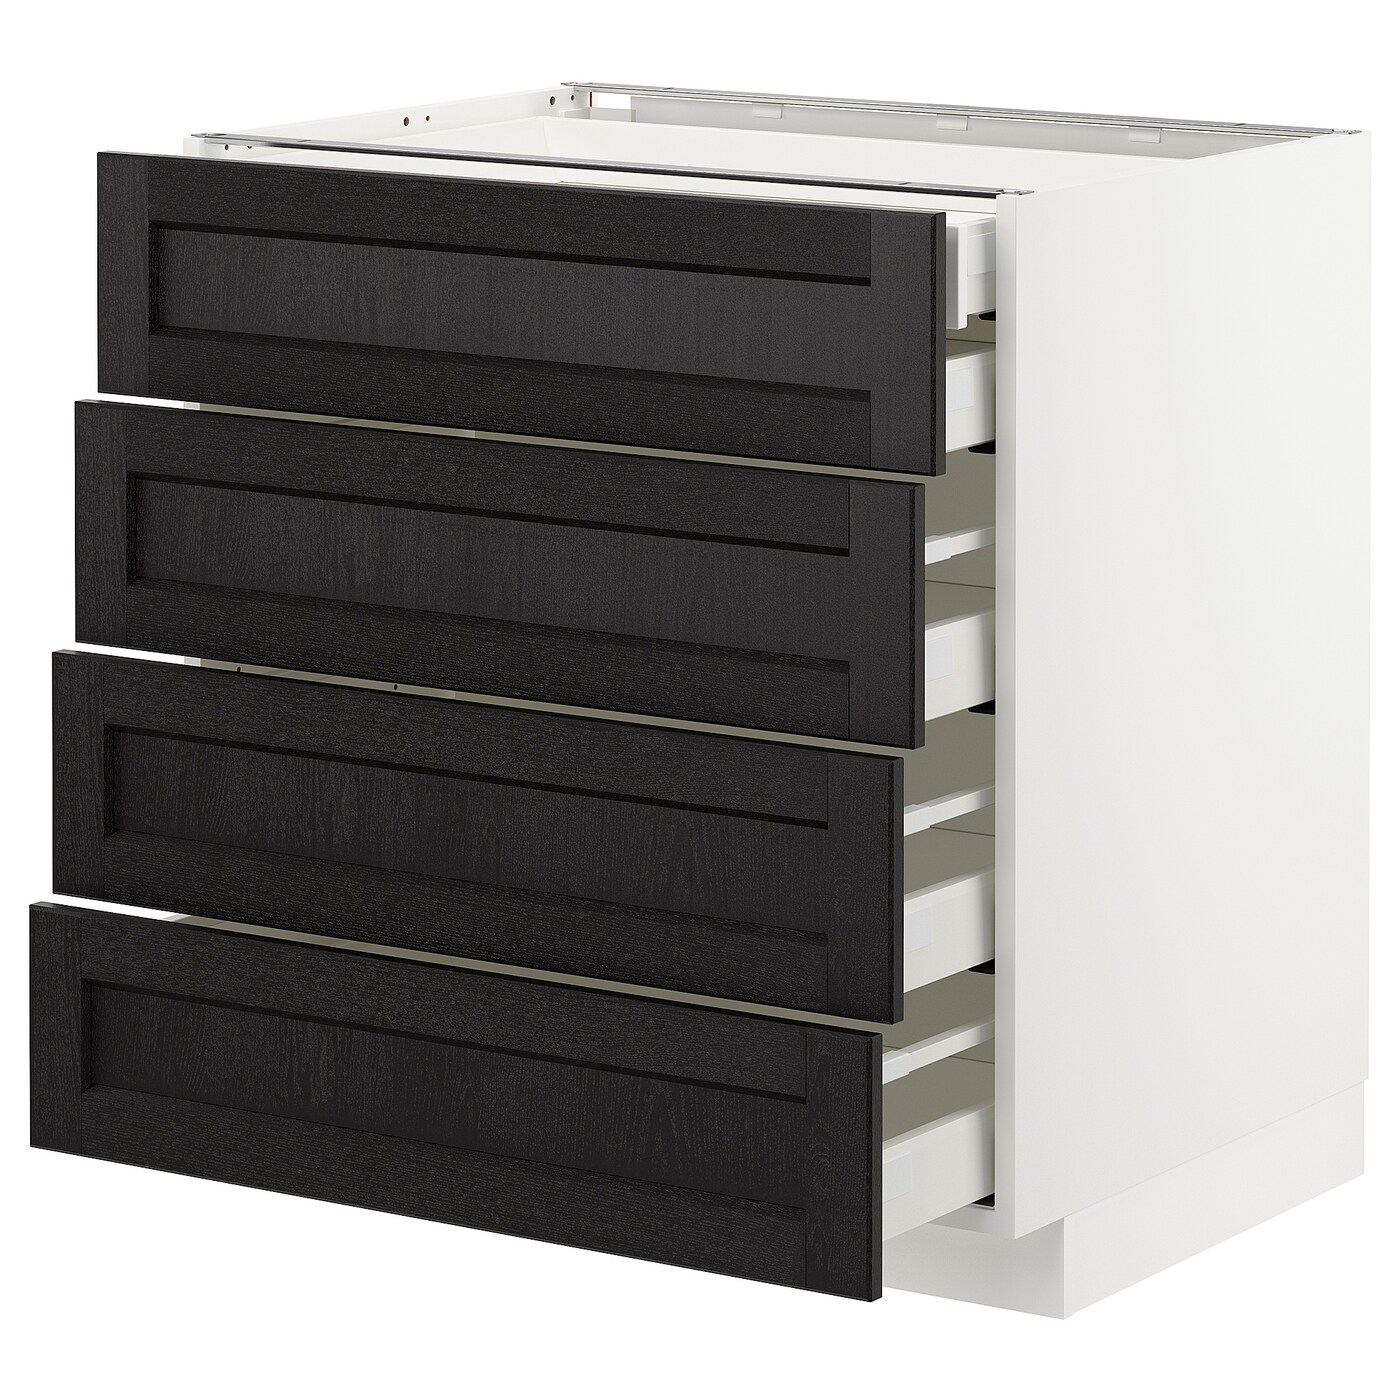 Напольный кухонный шкаф  - IKEA METOD MAXIMERA, 88x62x80см, белый/черный, МЕТОД МАКСИМЕРА ИКЕА